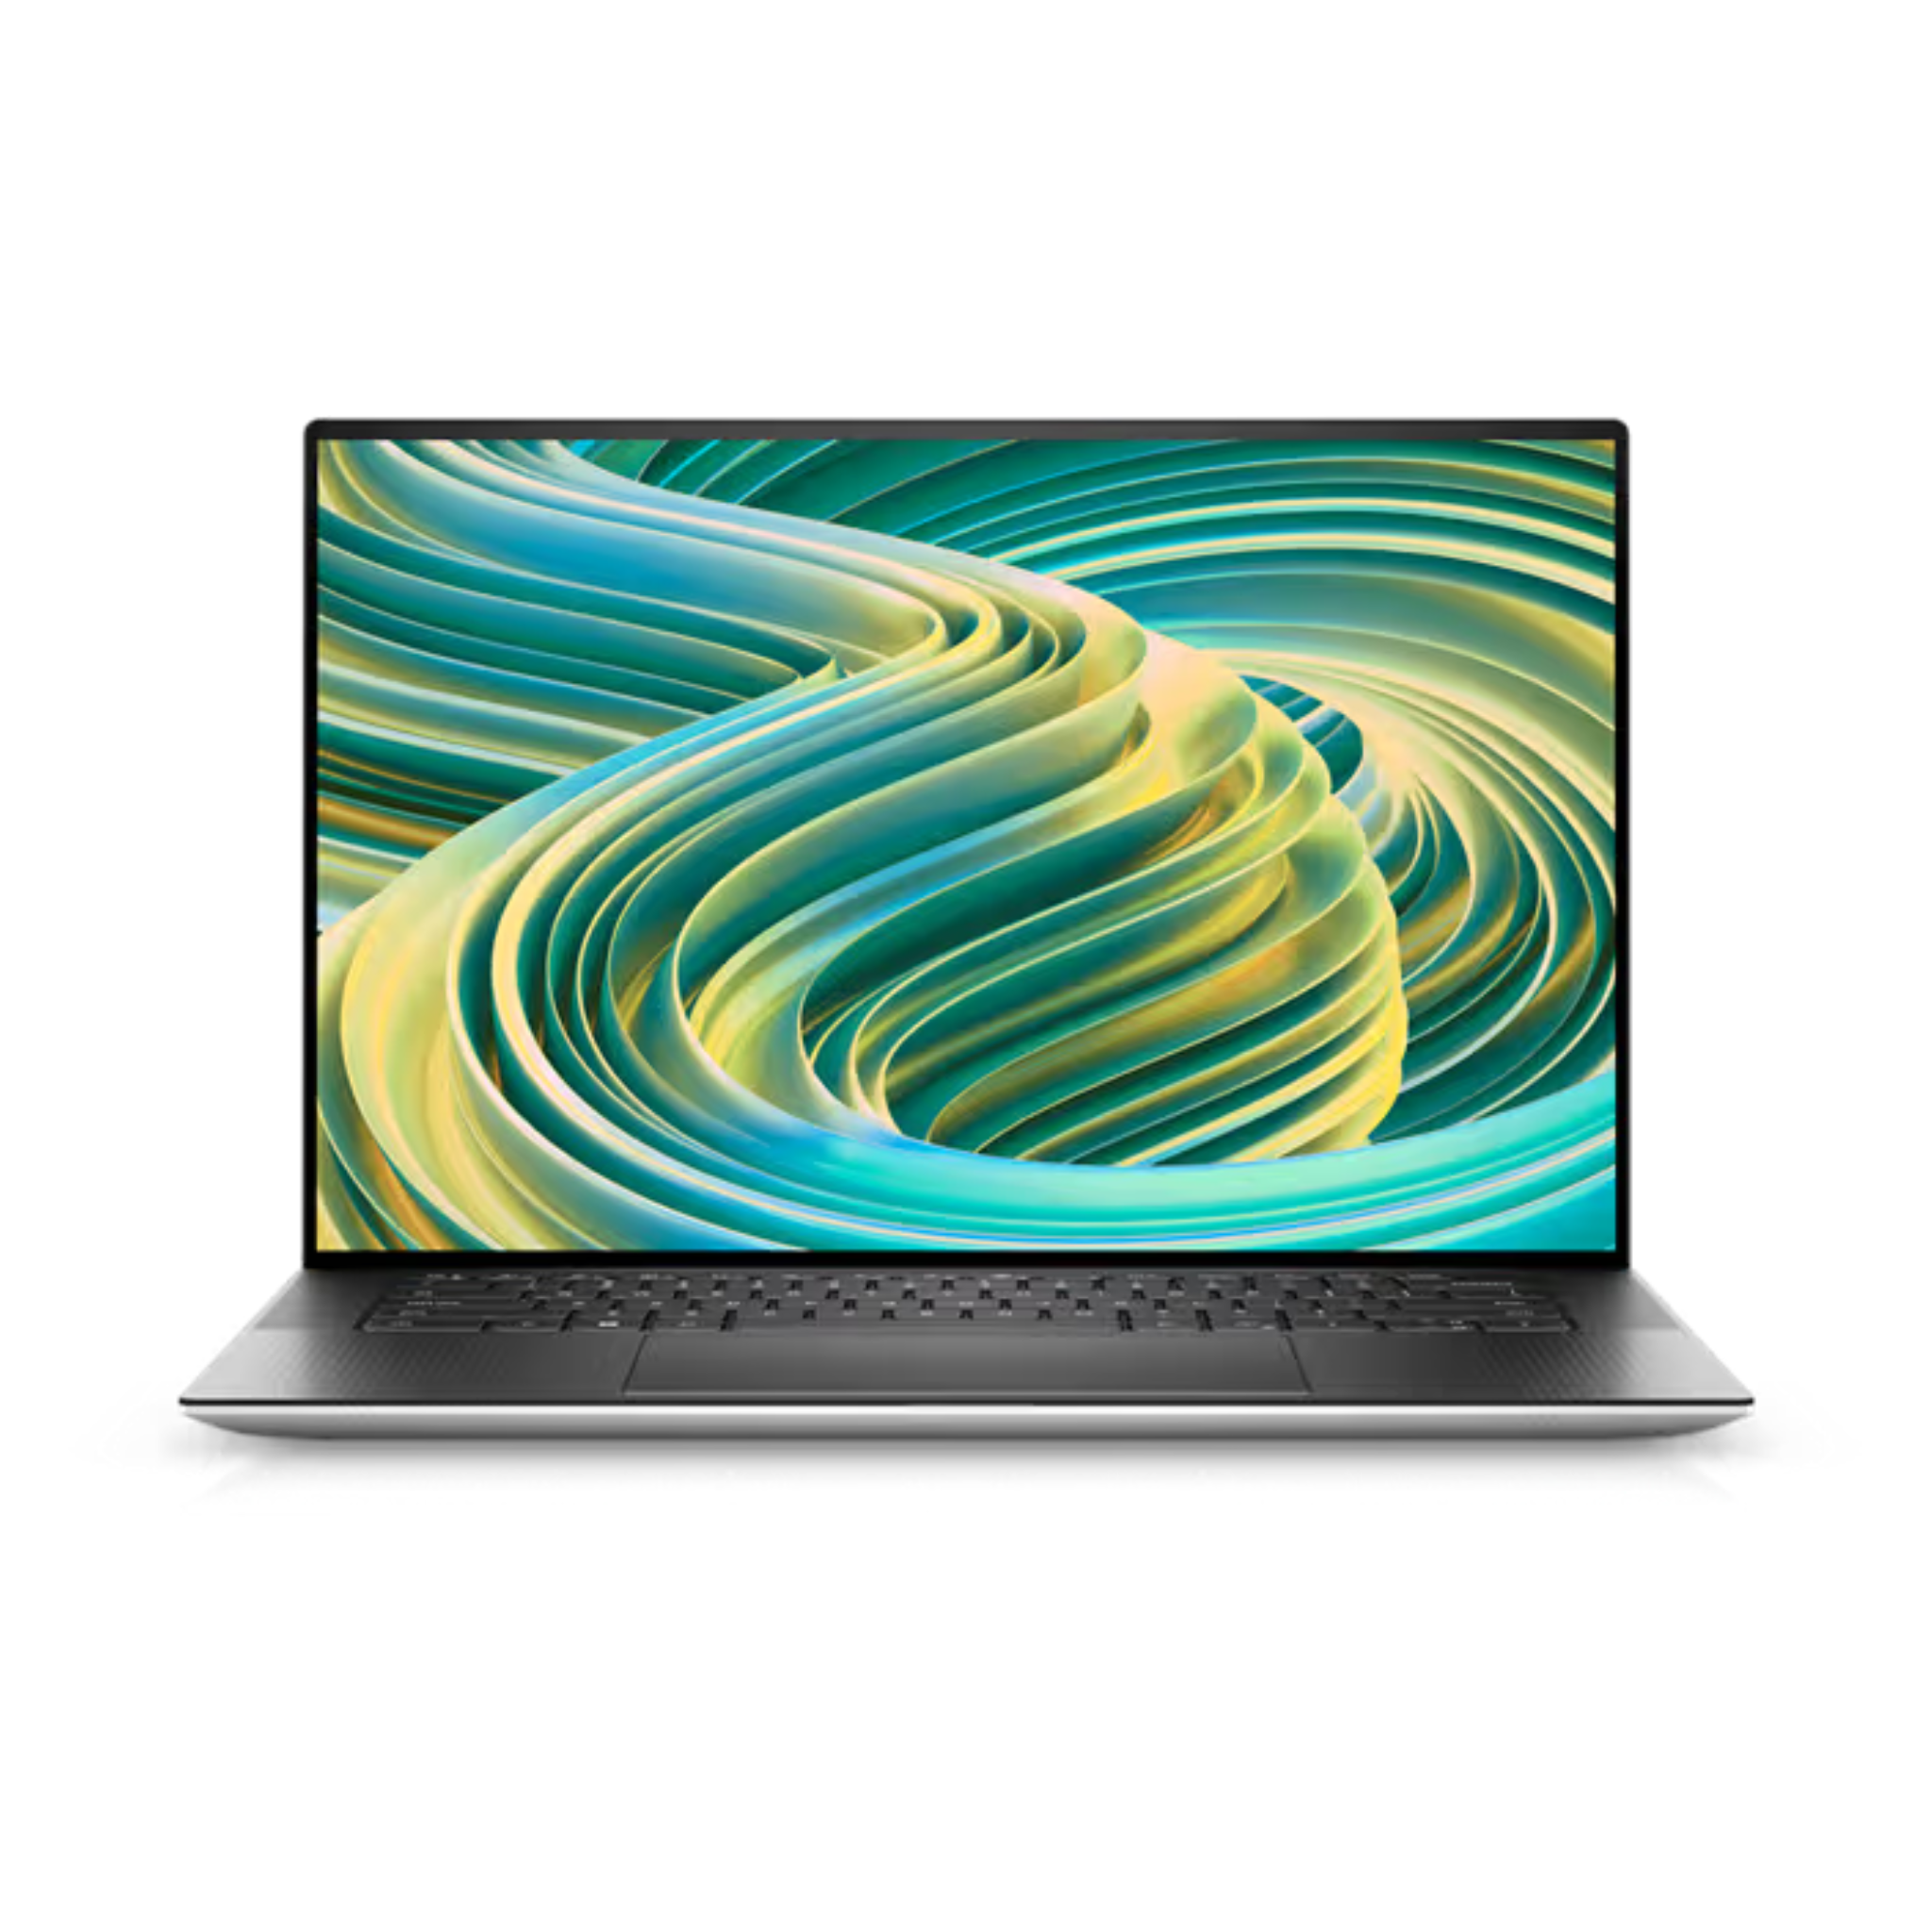 Dell XPS 15 15.6" FHD Laptop